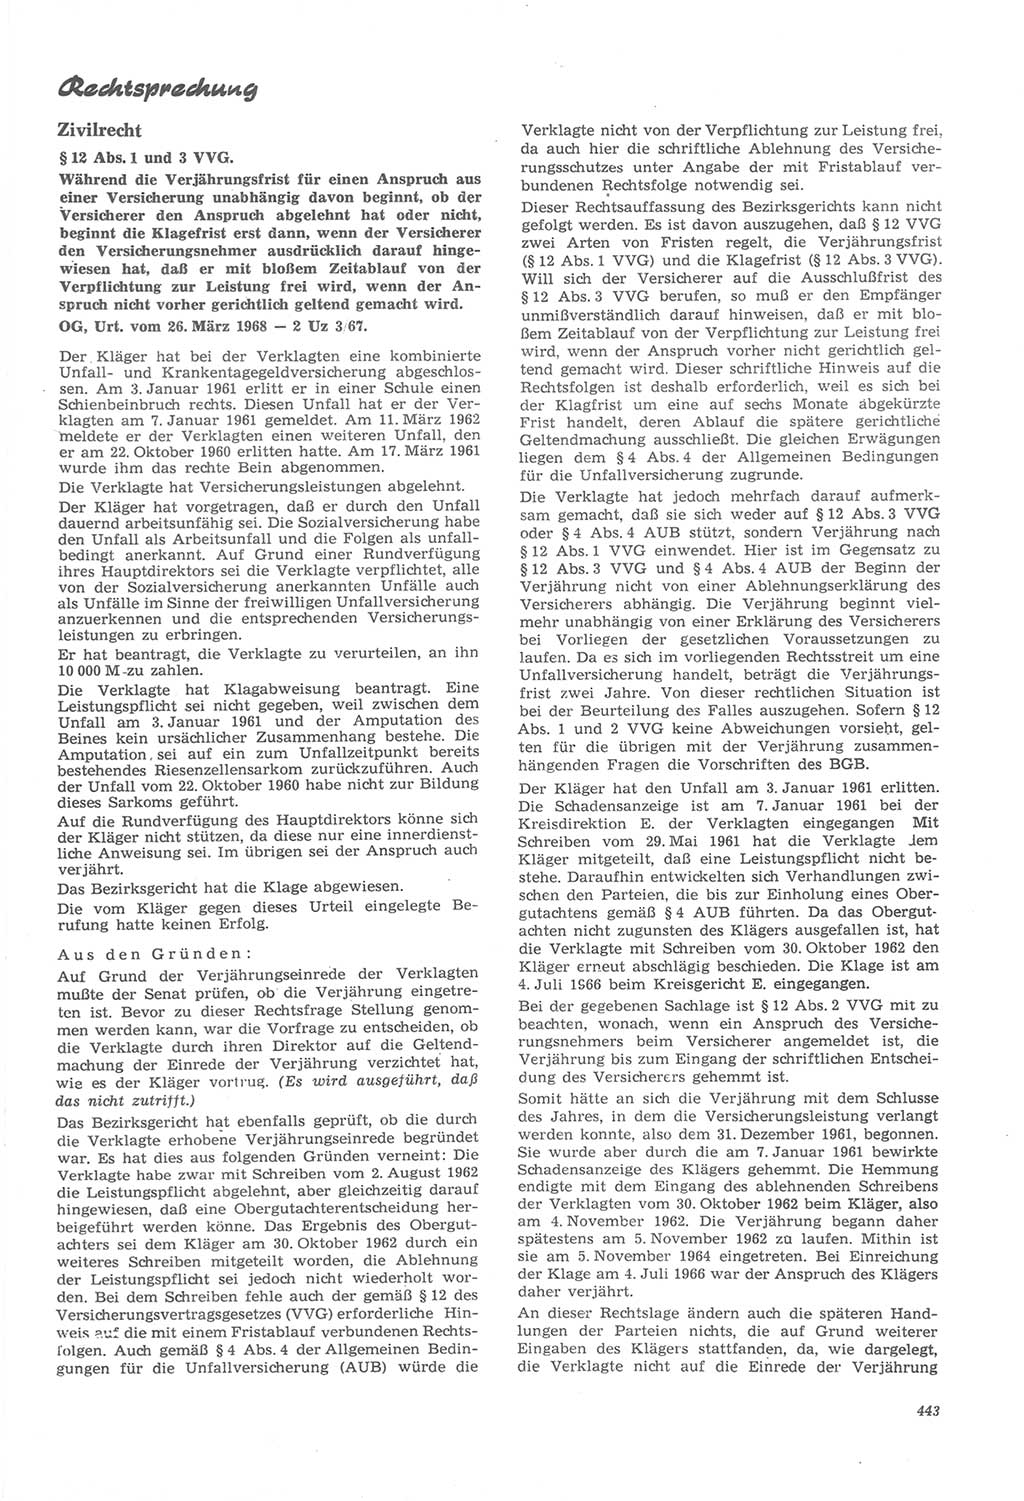 Neue Justiz (NJ), Zeitschrift für Recht und Rechtswissenschaft [Deutsche Demokratische Republik (DDR)], 22. Jahrgang 1968, Seite 443 (NJ DDR 1968, S. 443)